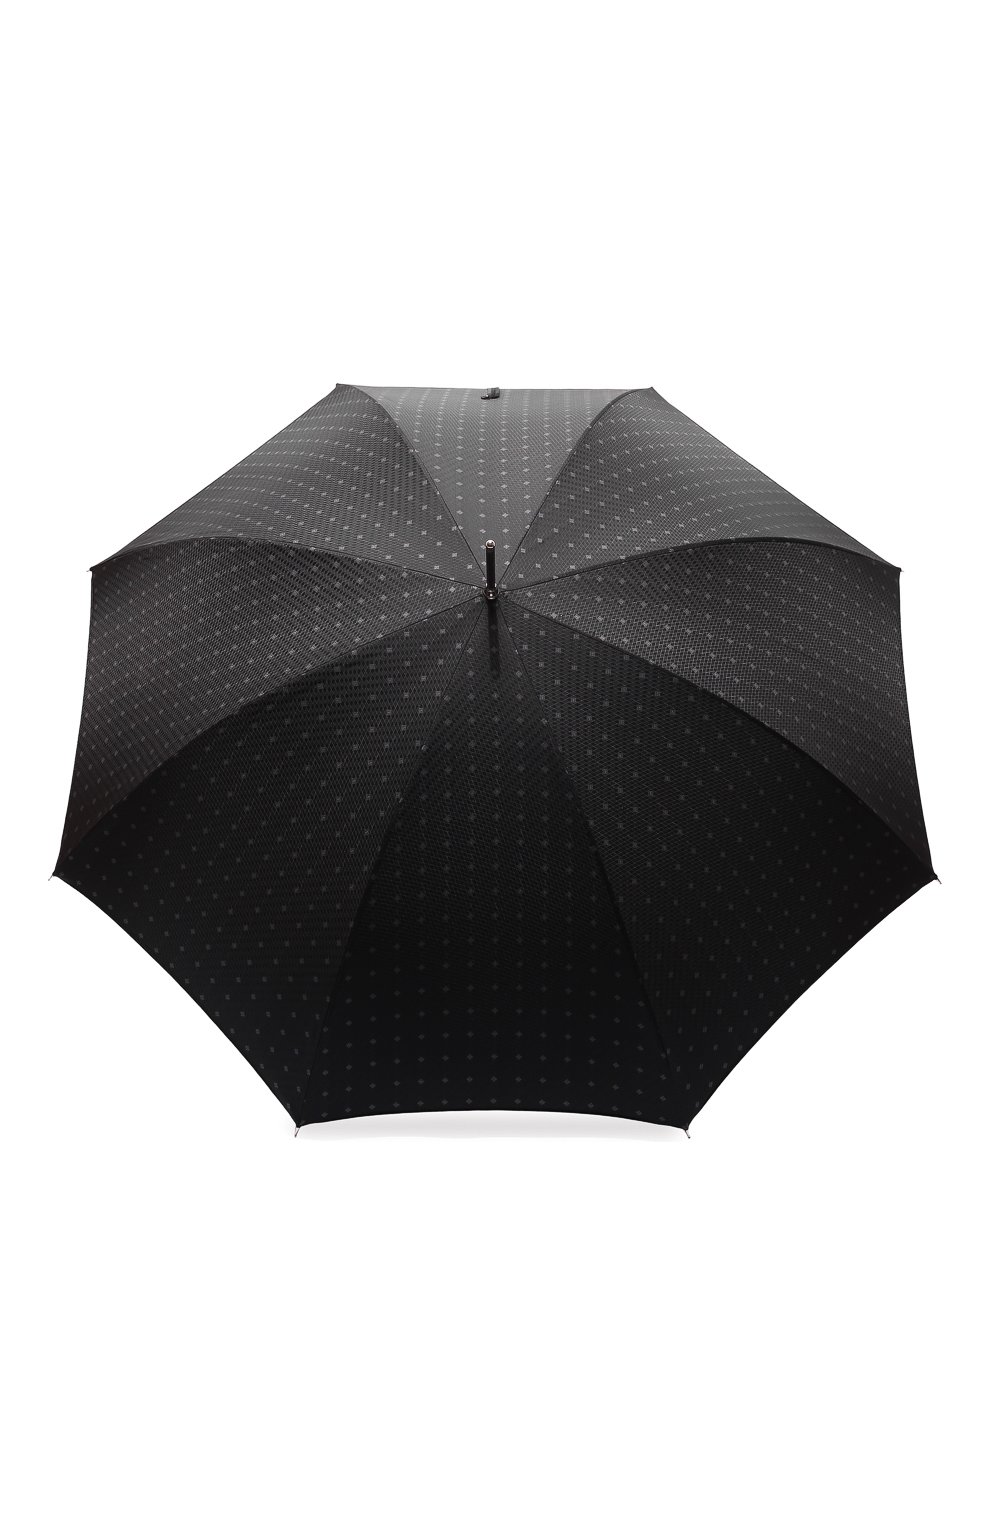 Мужской зонт-трость PASOTTI OMBRELLI черного цвета, арт. 0MITU0 478/RAS0 6279/1 | Фото 1 (Материал: Текстиль, Синтетический материал, Металл)